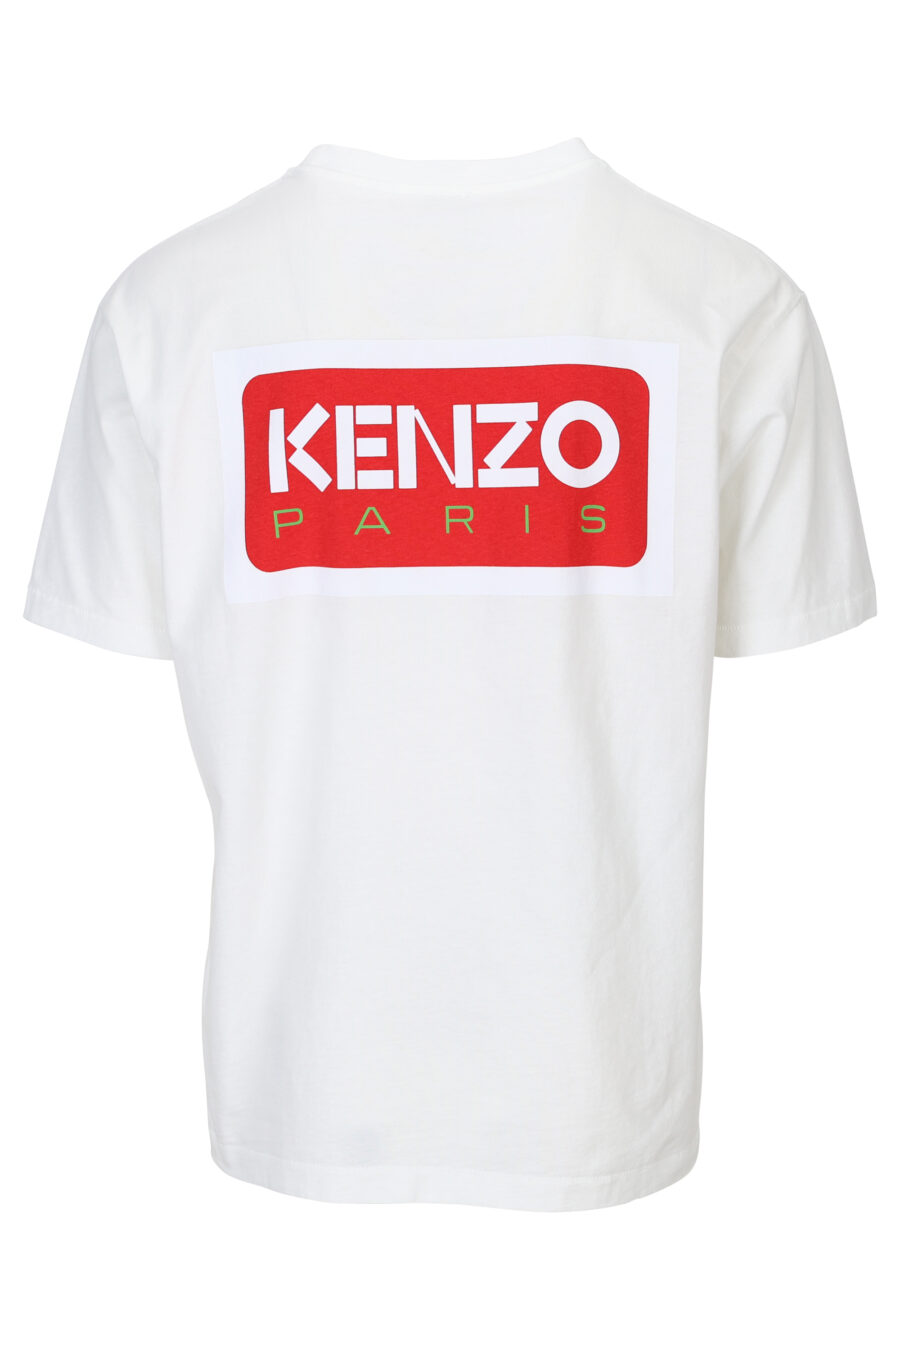 Camiseta blanca con maxilogo"kenzo paris" en espalda - 3612230543140 1